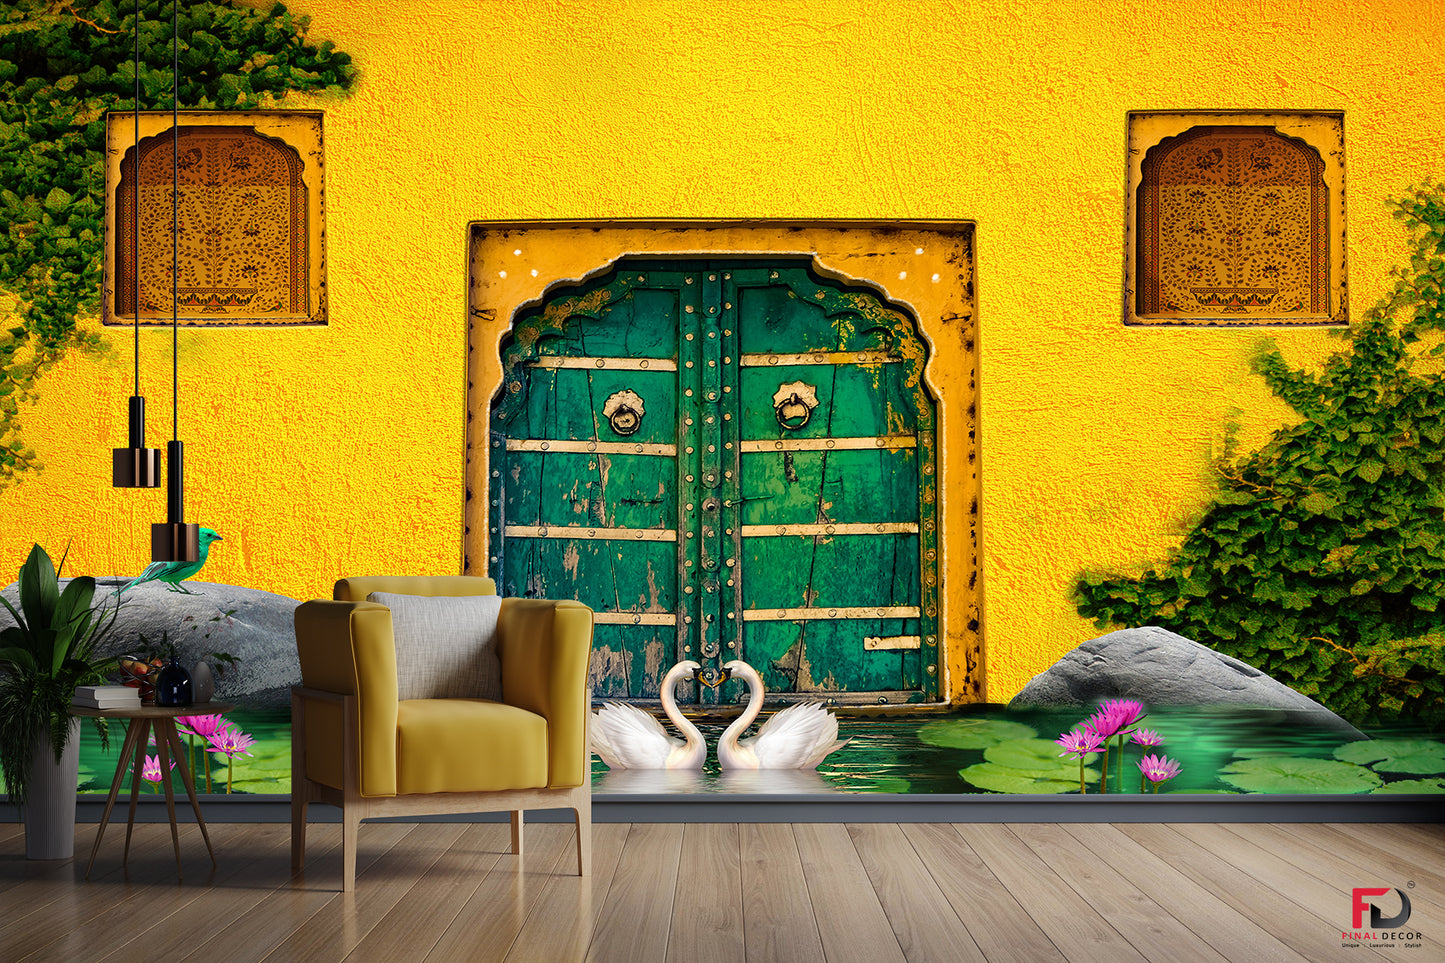 3D Yellow Village Wall Design Wallpaper